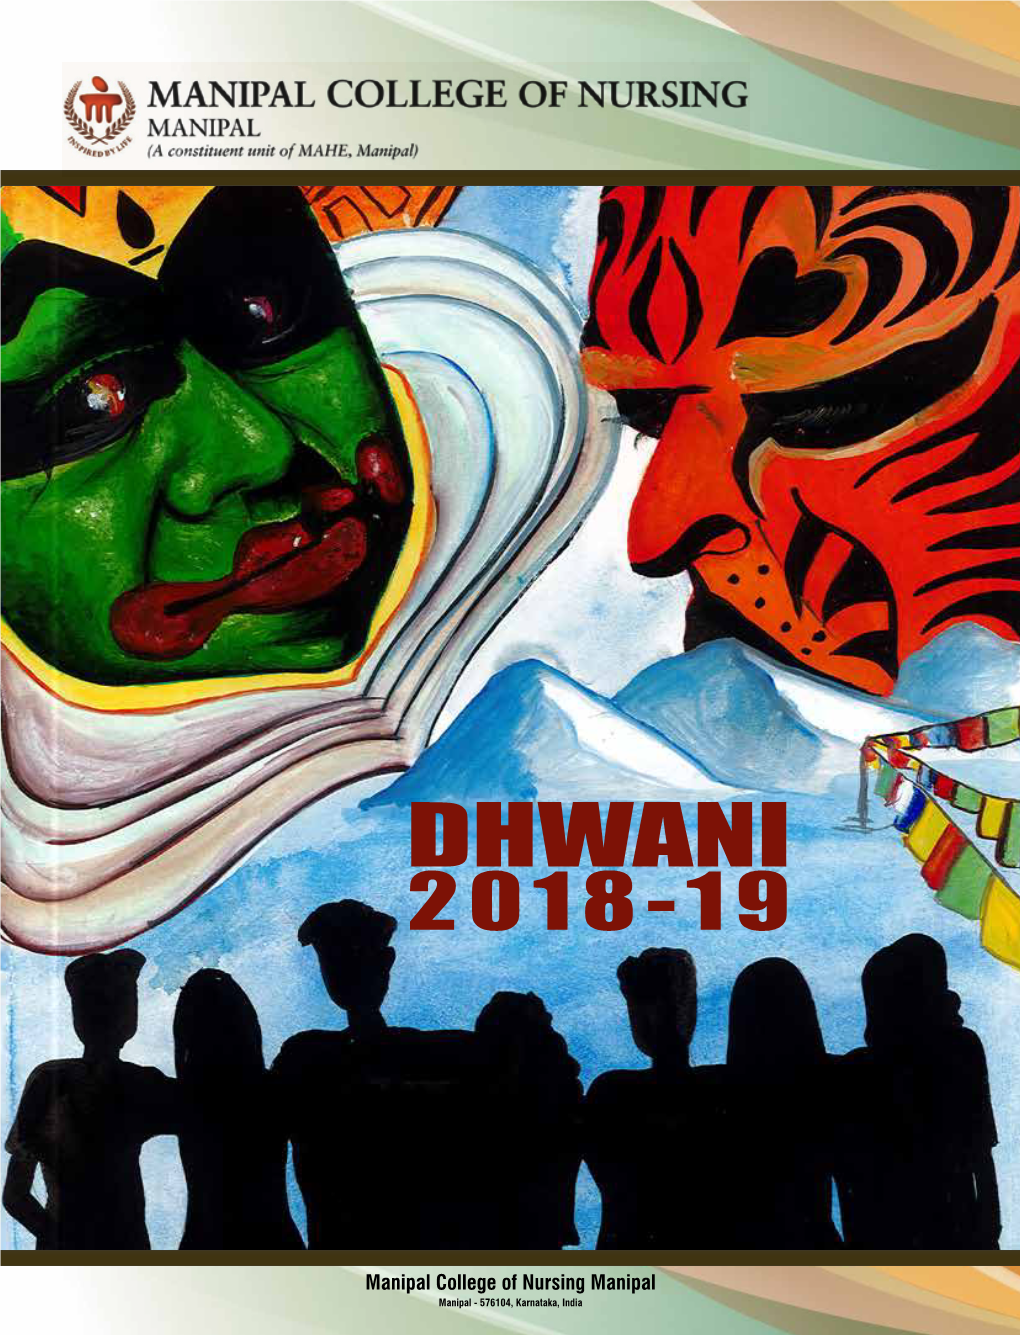 Dhwani 2018-19